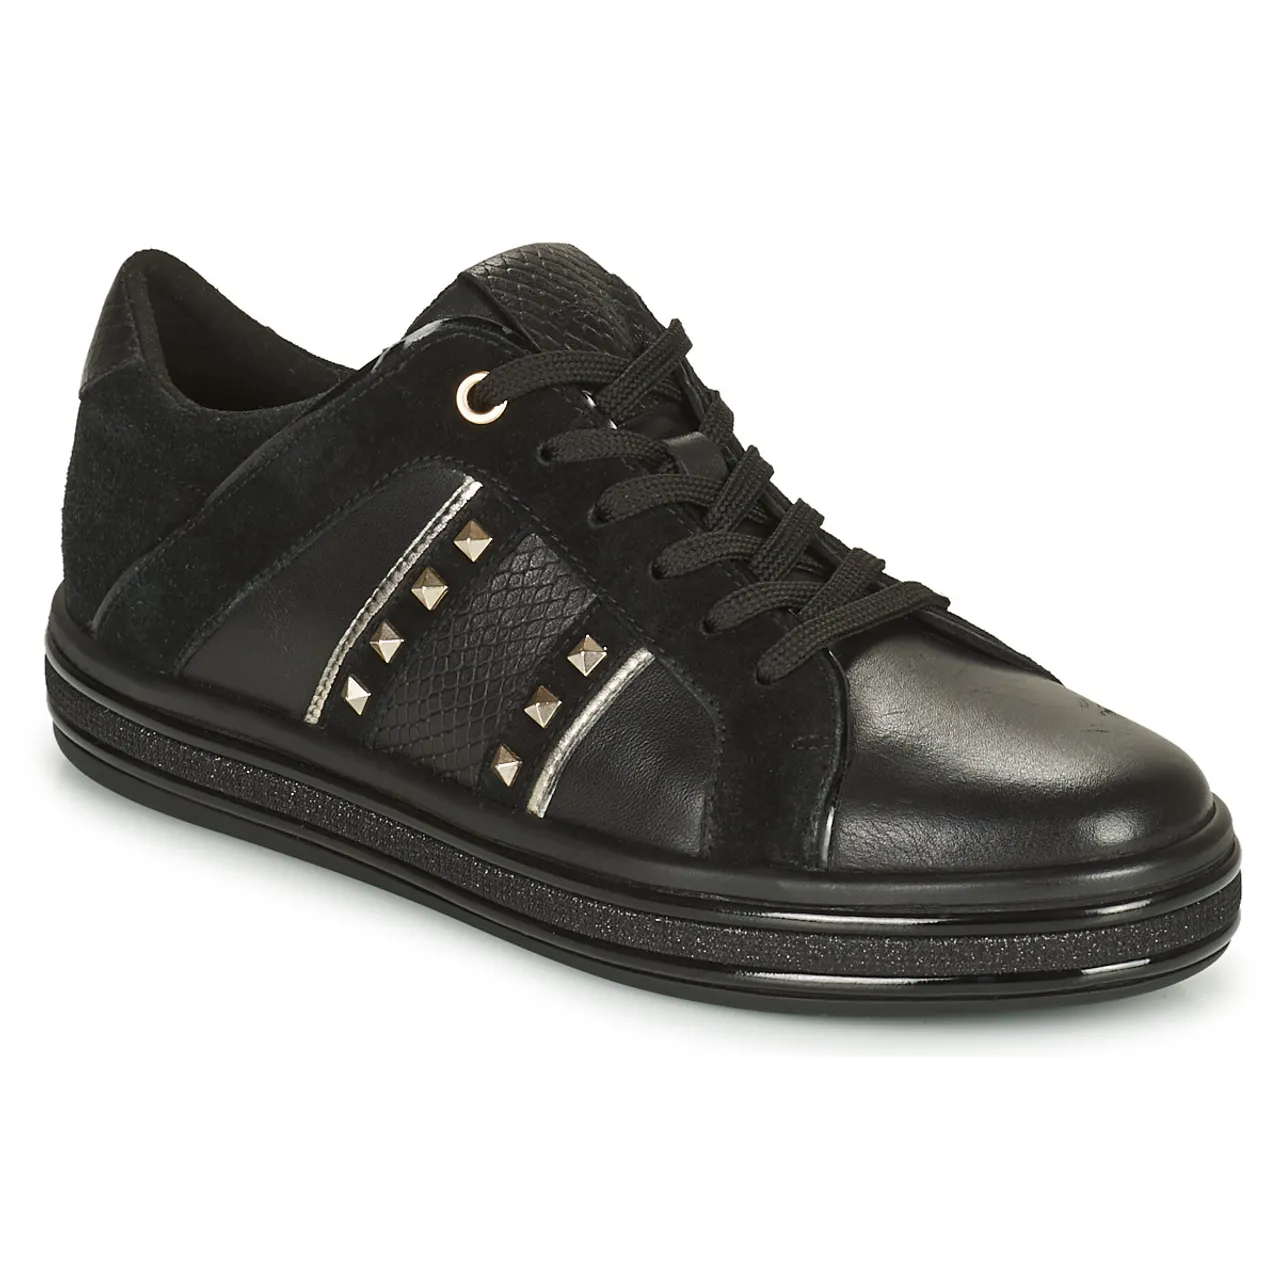 Geox  LEELU  women's Shoes (Trainers) in Black